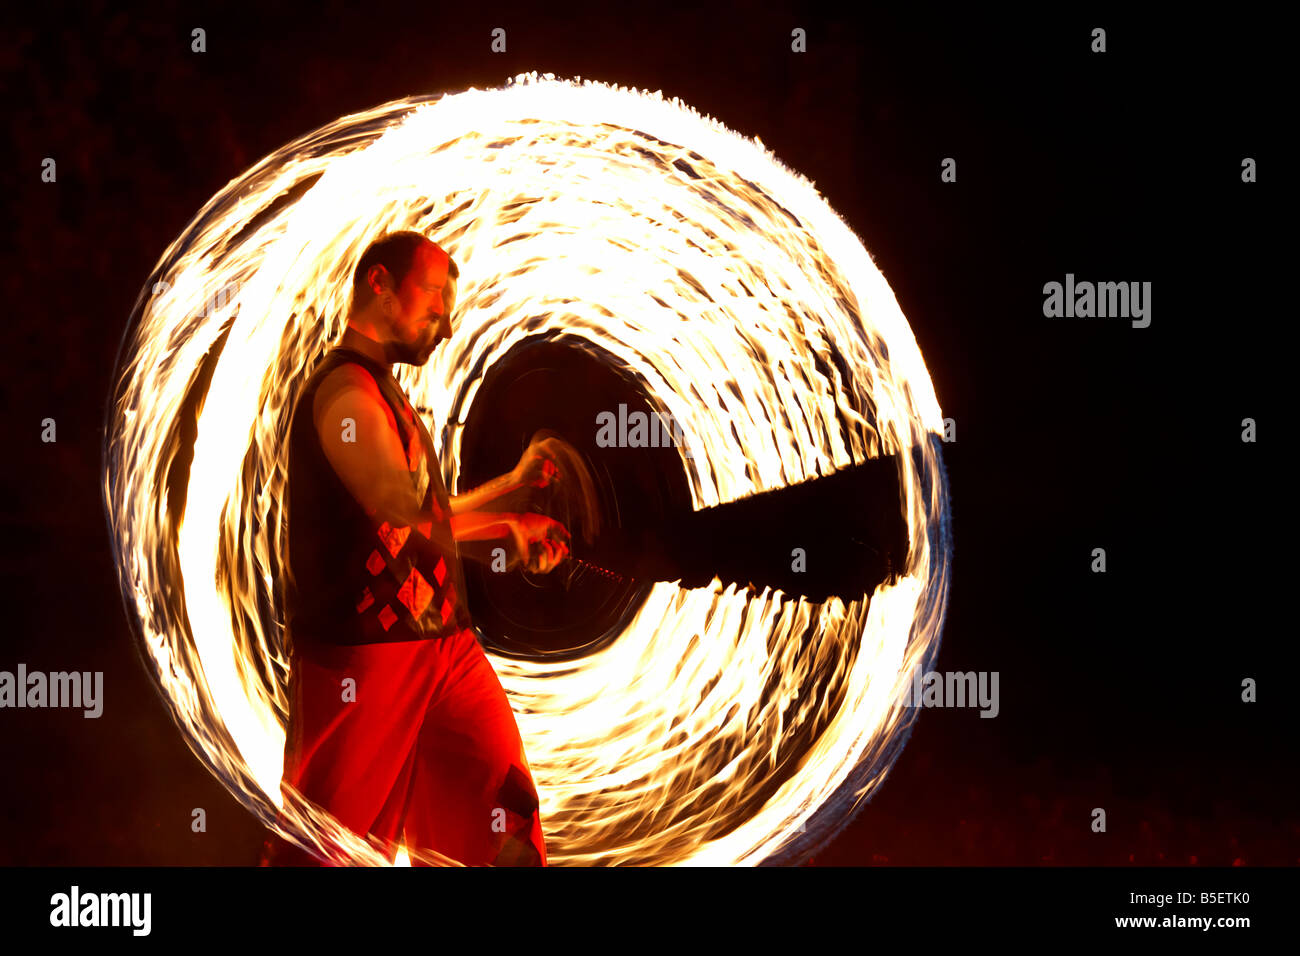 Firepoise uomo artista prestazioni di visualizzazione di modelli d'incendio con sfere di poi giocare con il fuoco Foto Stock